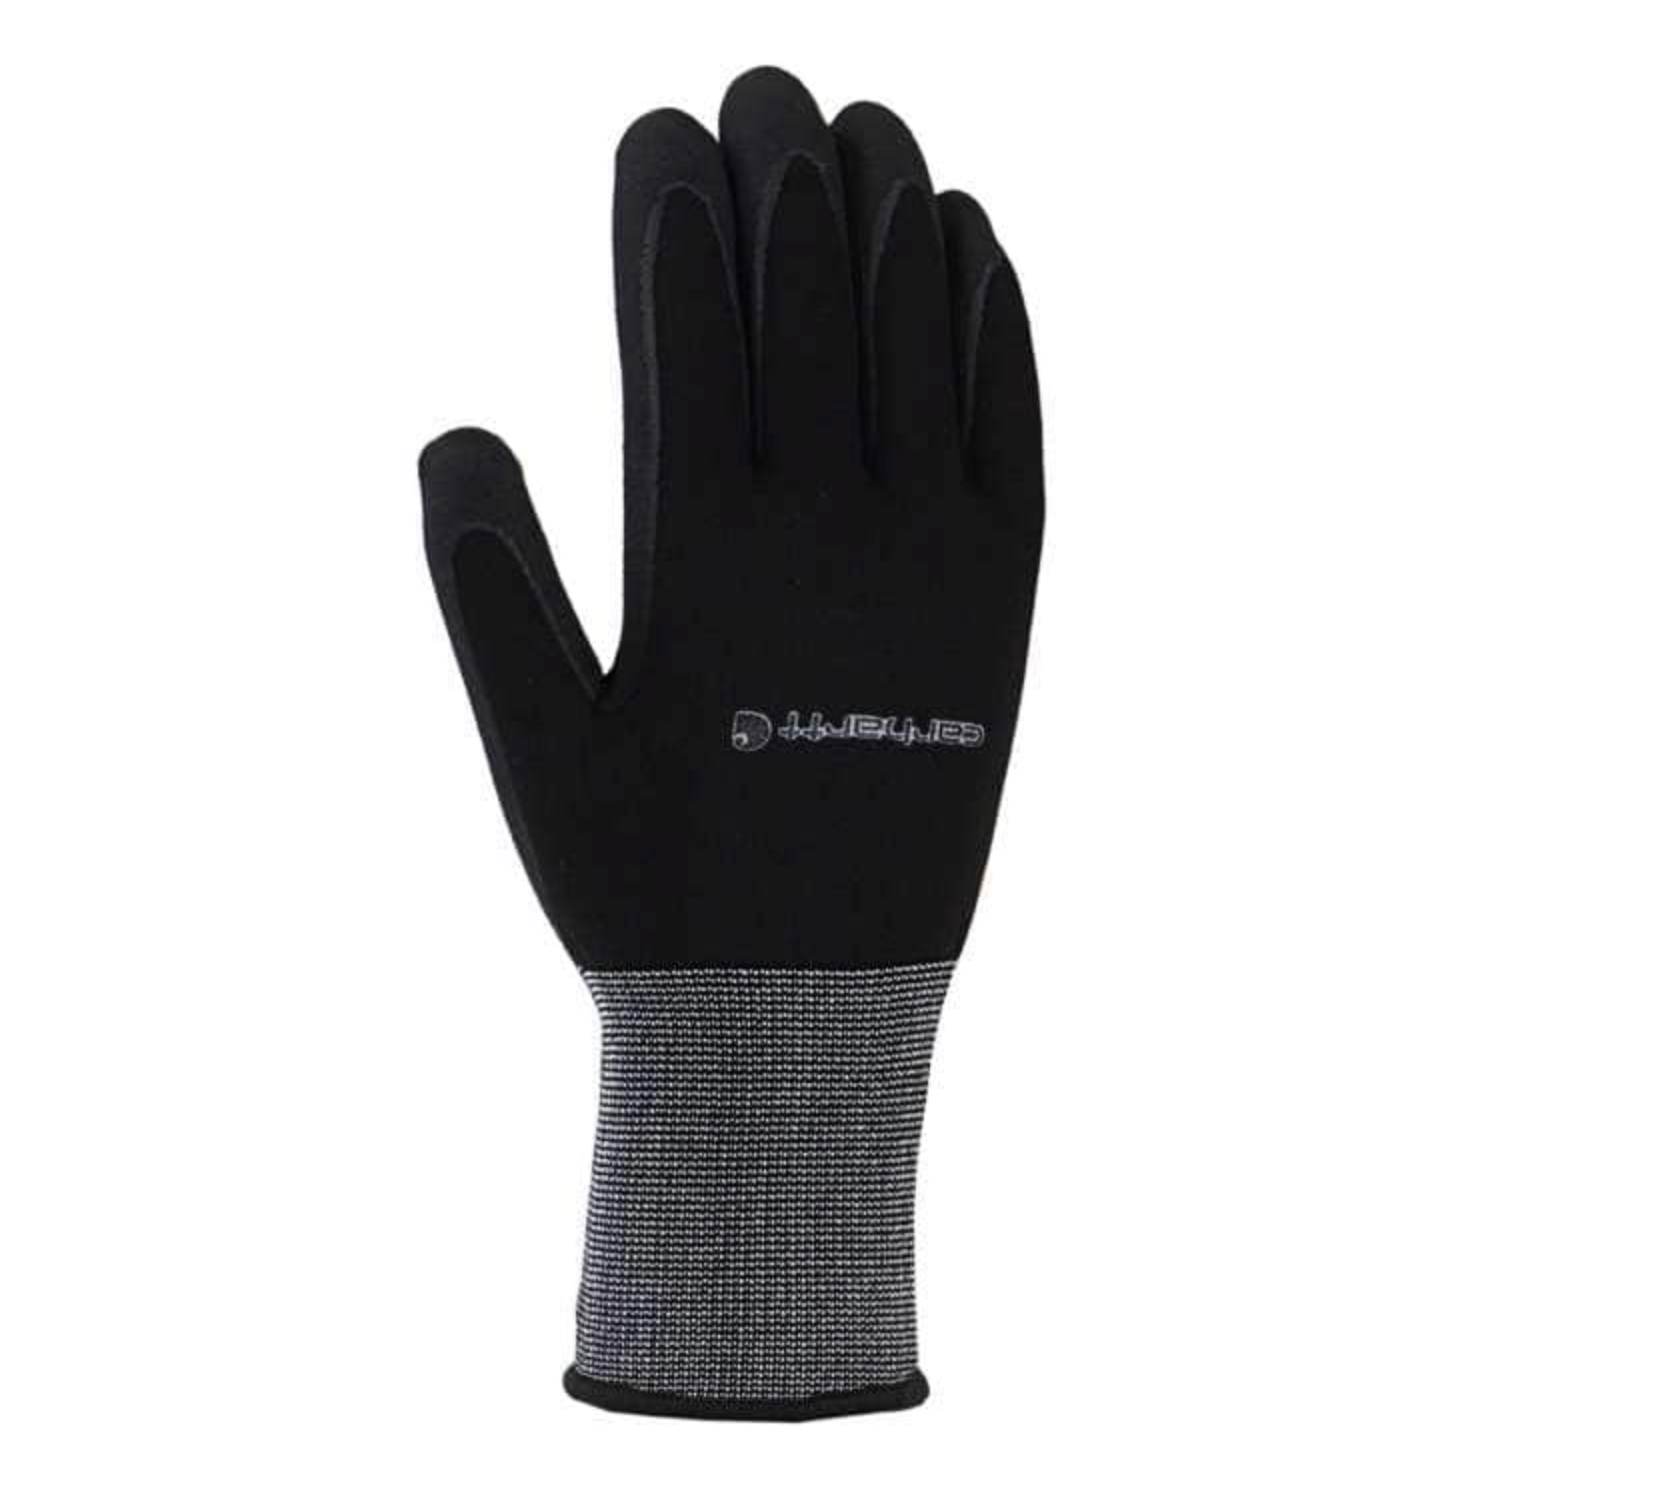 Carhartt All Purpose Nitrile Grip Glove - Work World - Workwear, Work Boots, Safety Gear